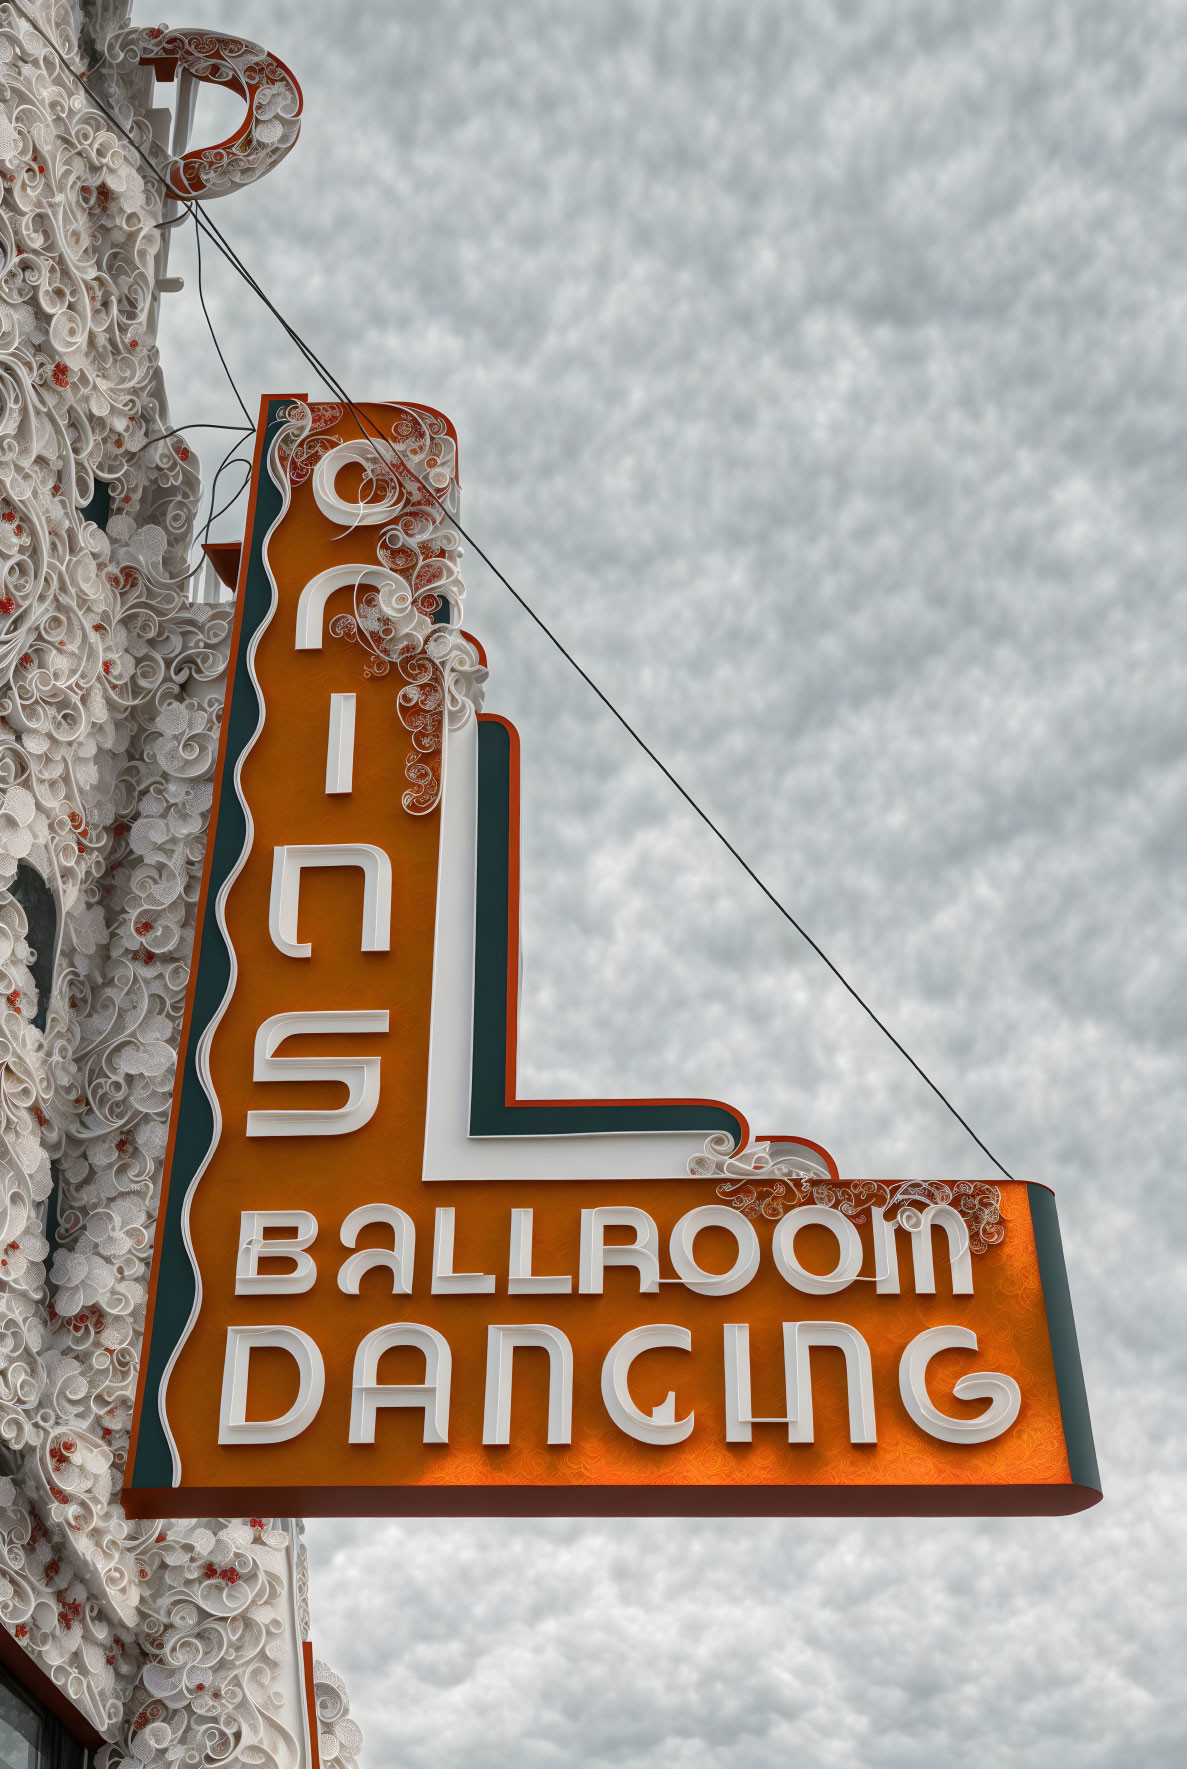 Cains Ballroom Dancing